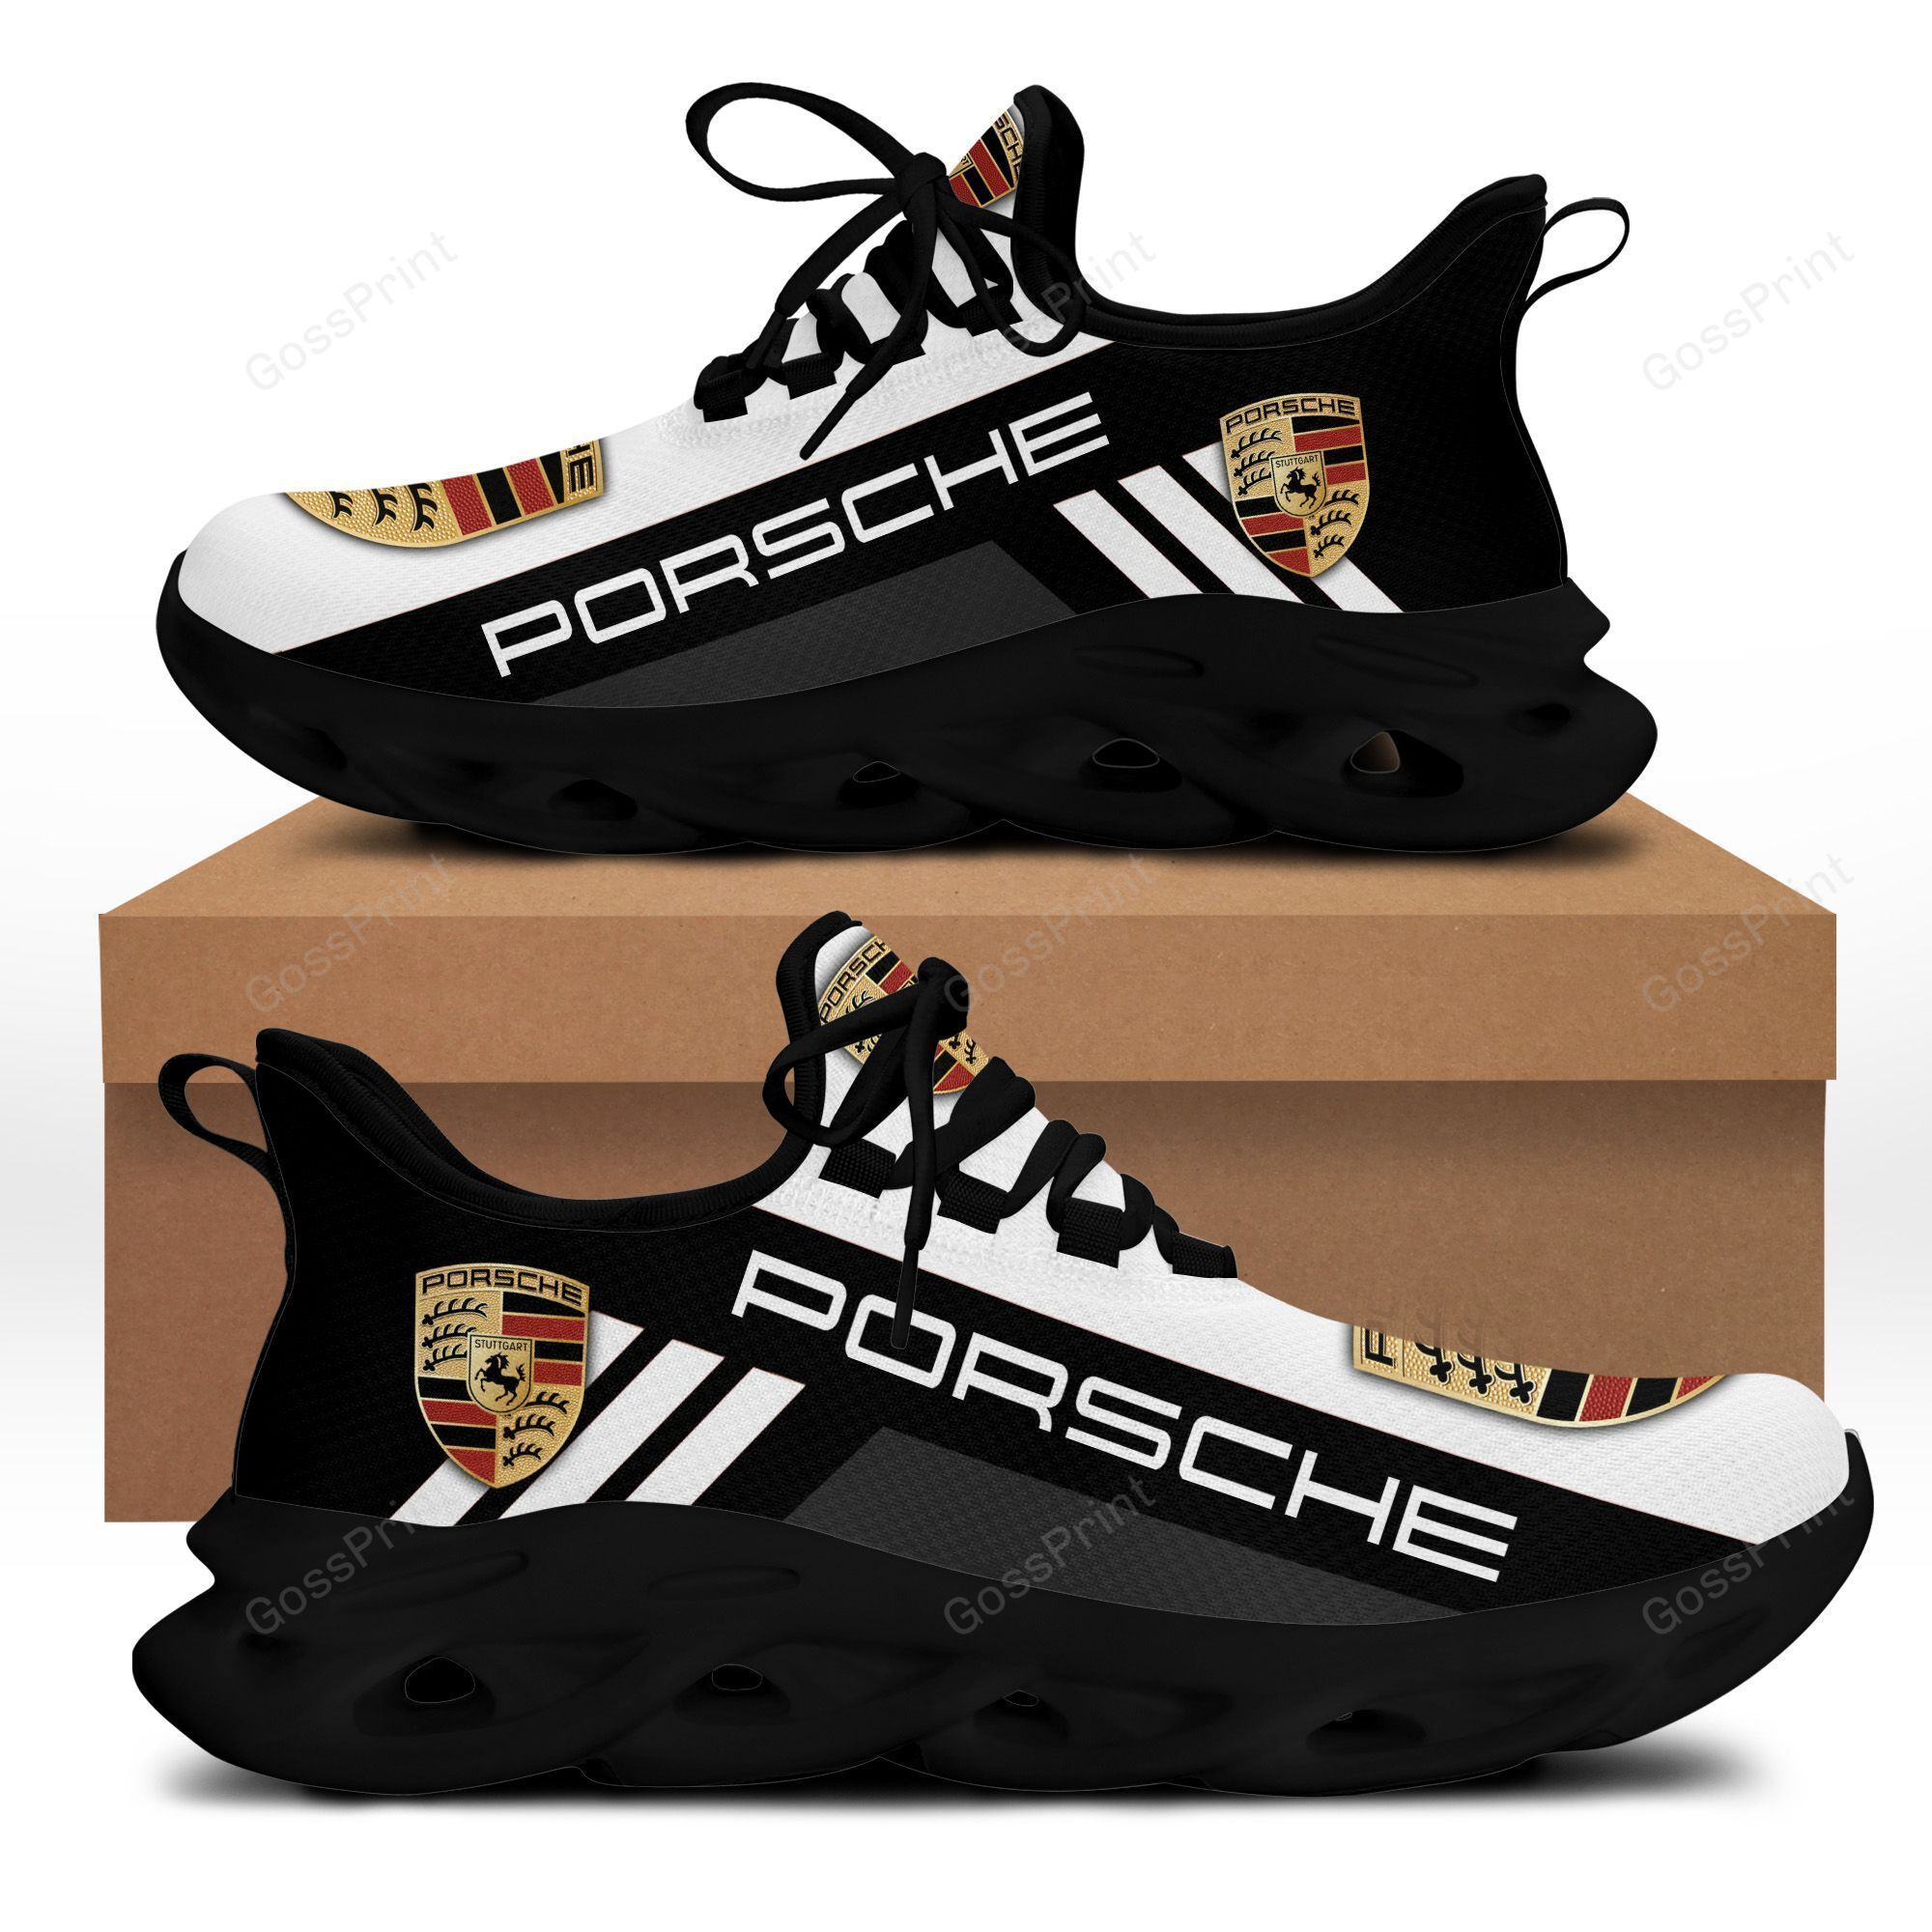 Porsche Running Shoes Ver 2